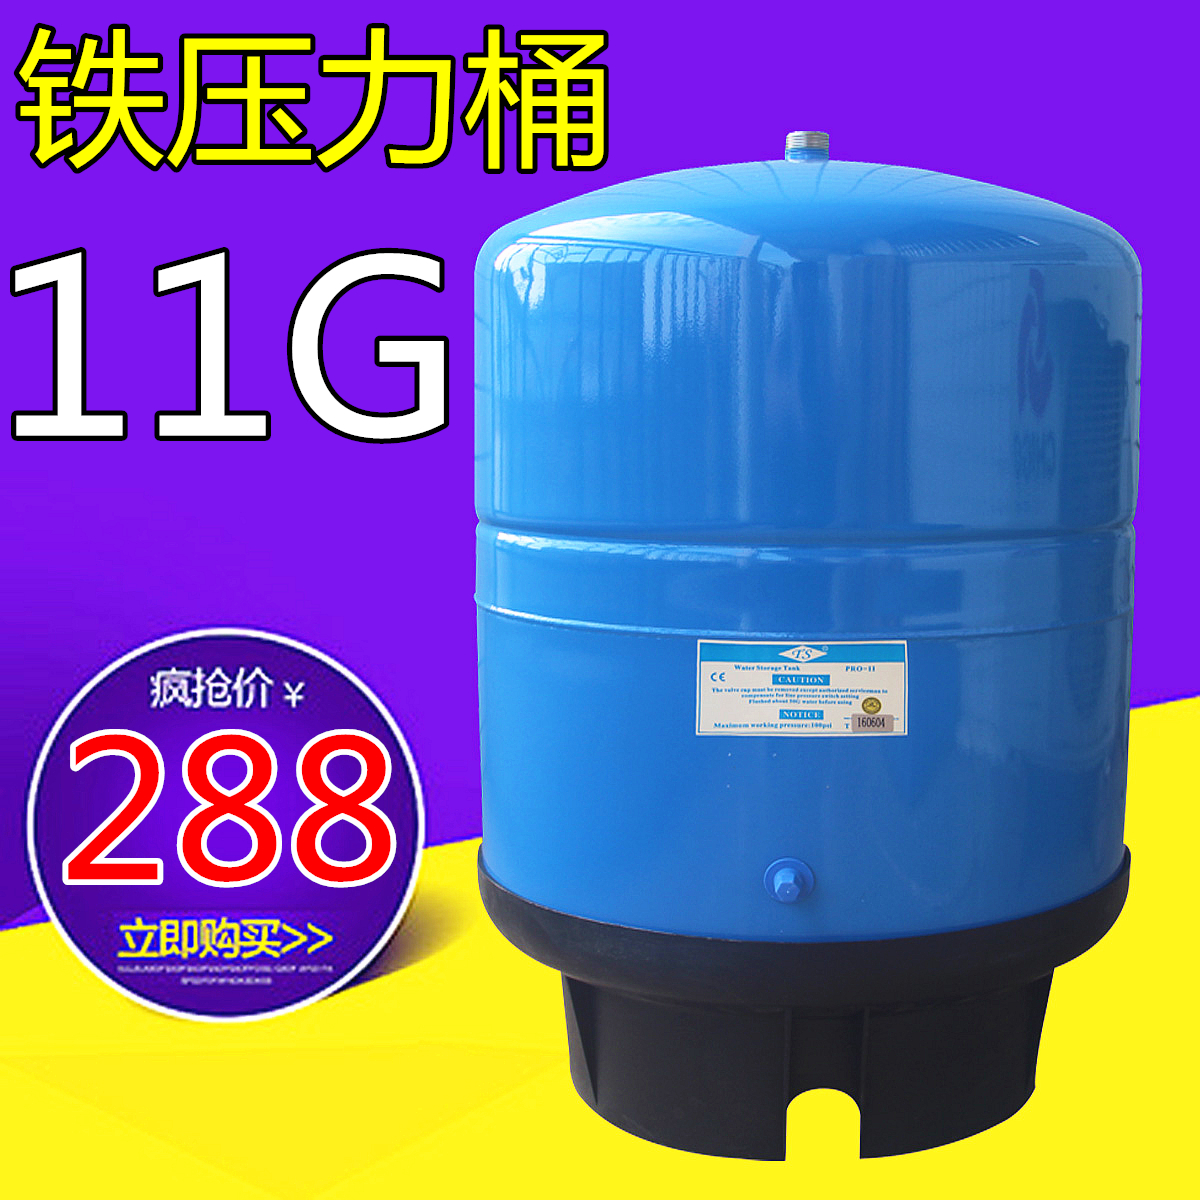 商用纯水机11G压力桶储水桶11加仑储水罐 美的安吉尔净水器通用